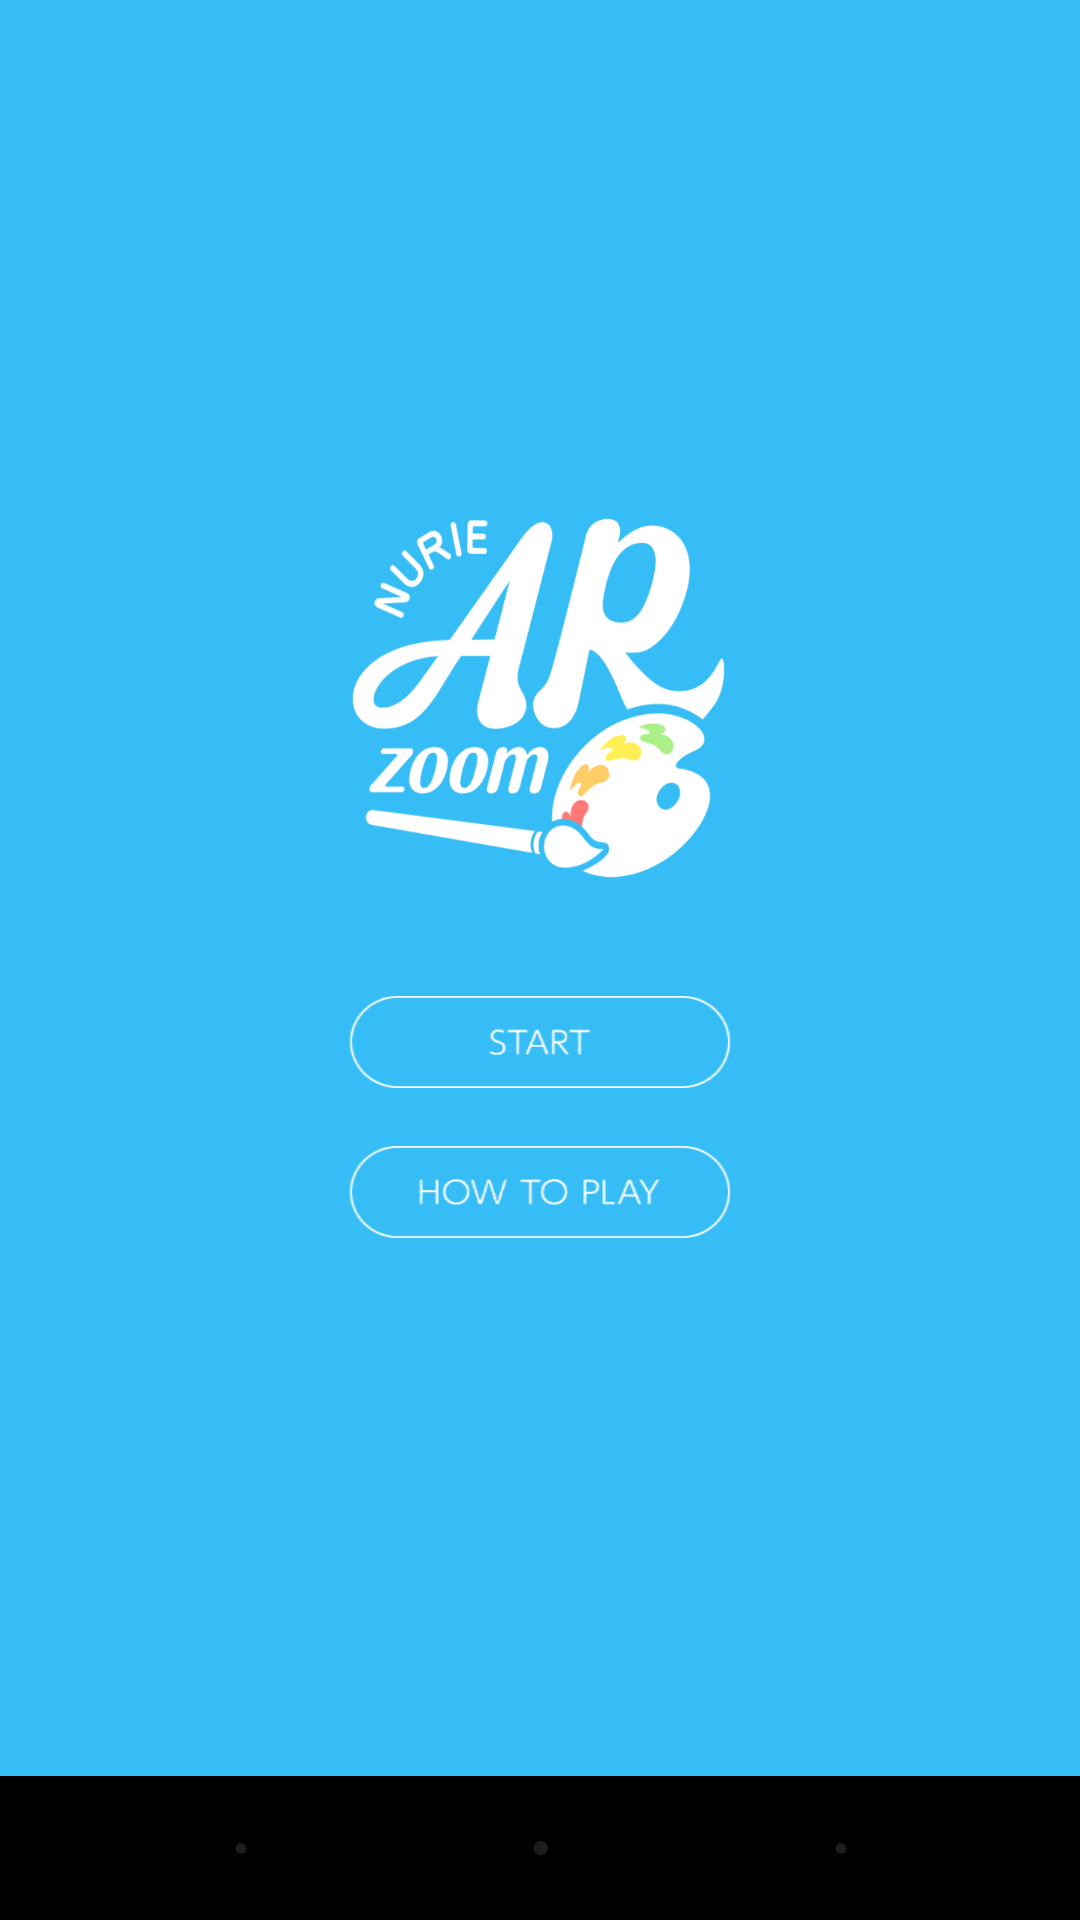 無料で「NURIE AR ZOOM 塗り絵キャラクターで遊べるAR」アプリの最新版 APK1.2.2をダウンロードー Android用